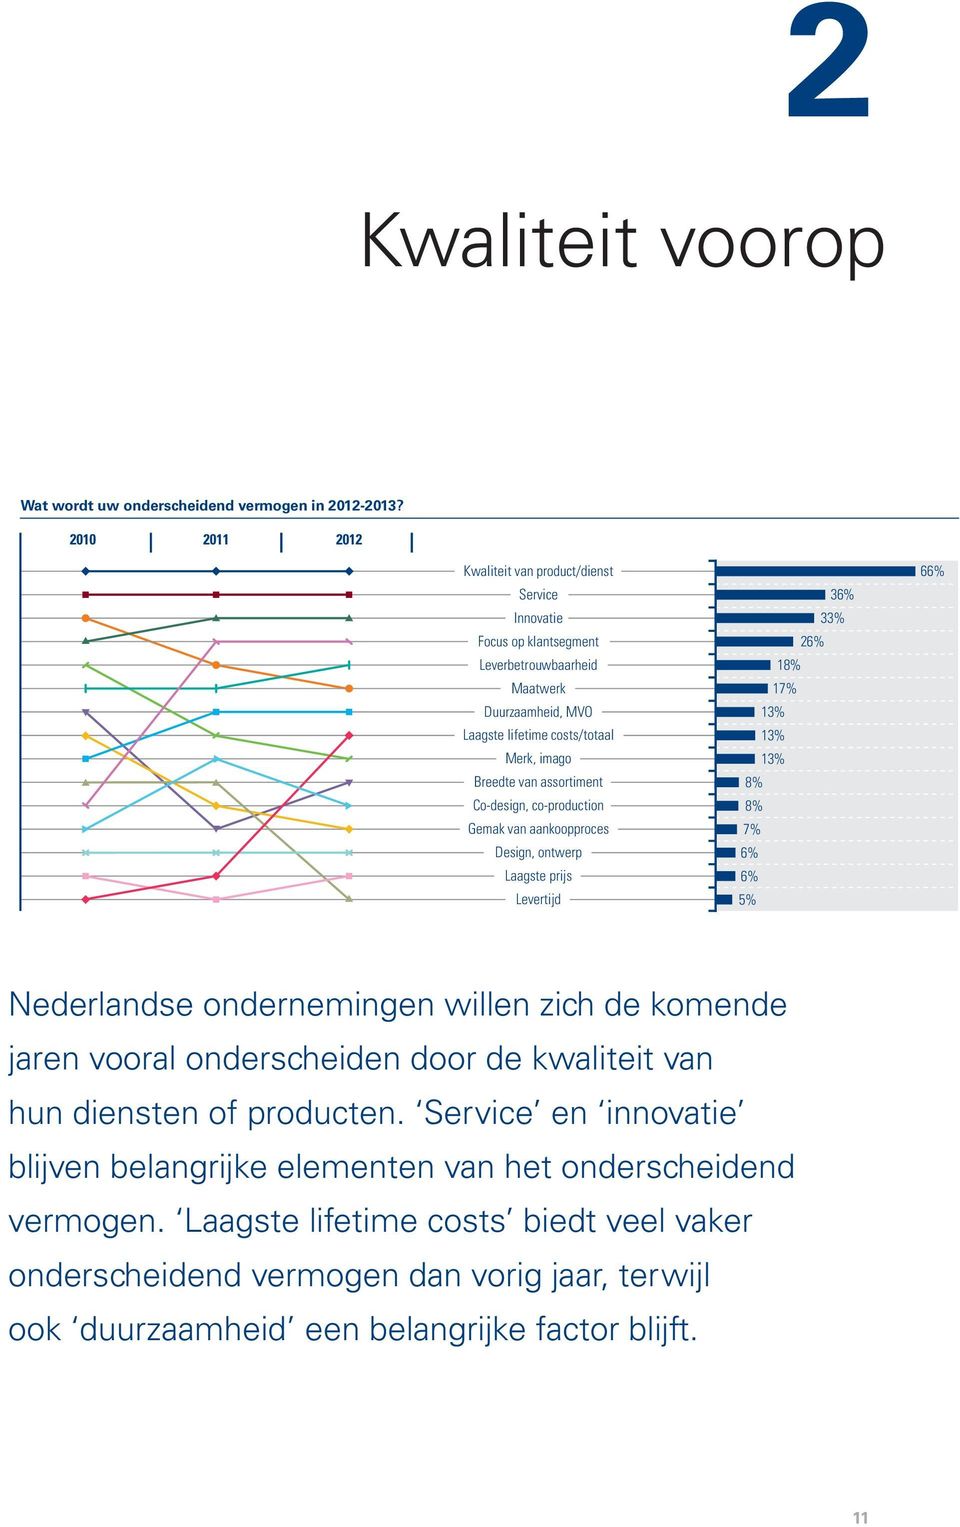 assortiment Co-design, co-production Gemak van aankoopproces Design, ontwerp Laagste prijs Levertijd 36% 33% 26% 18% 17% 13% 13% 13% 8% 8% 7% 6% 6% 5% 66% Nederlandse ondernemingen willen